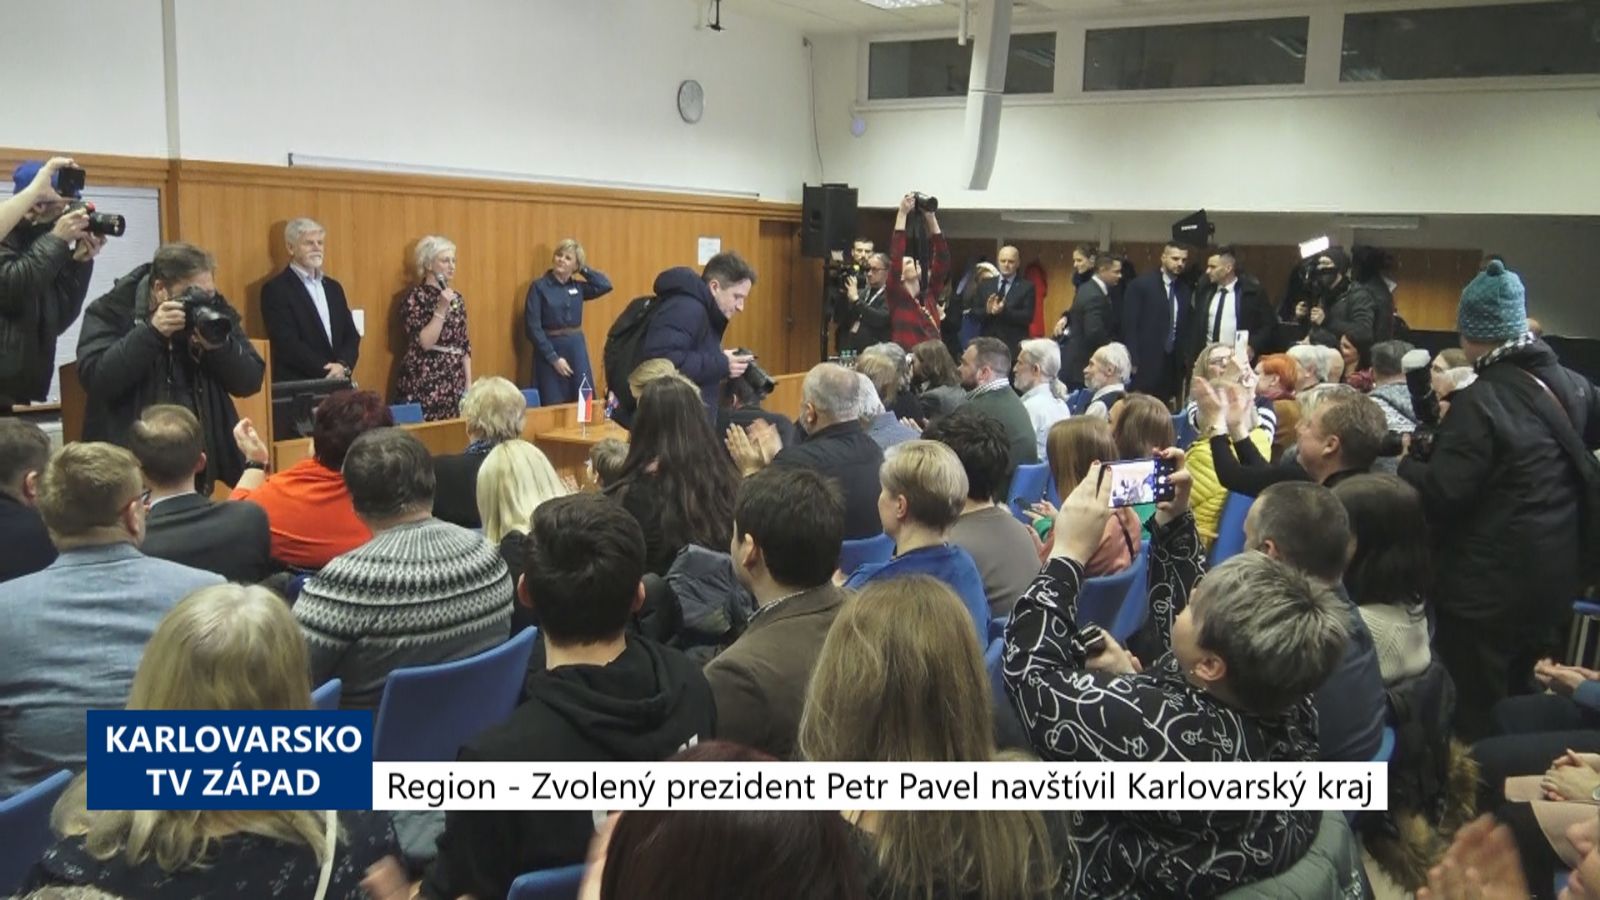 Region: Zvolený prezident Petr Pavel navštívil Karlovarský kraj (TV Západ)